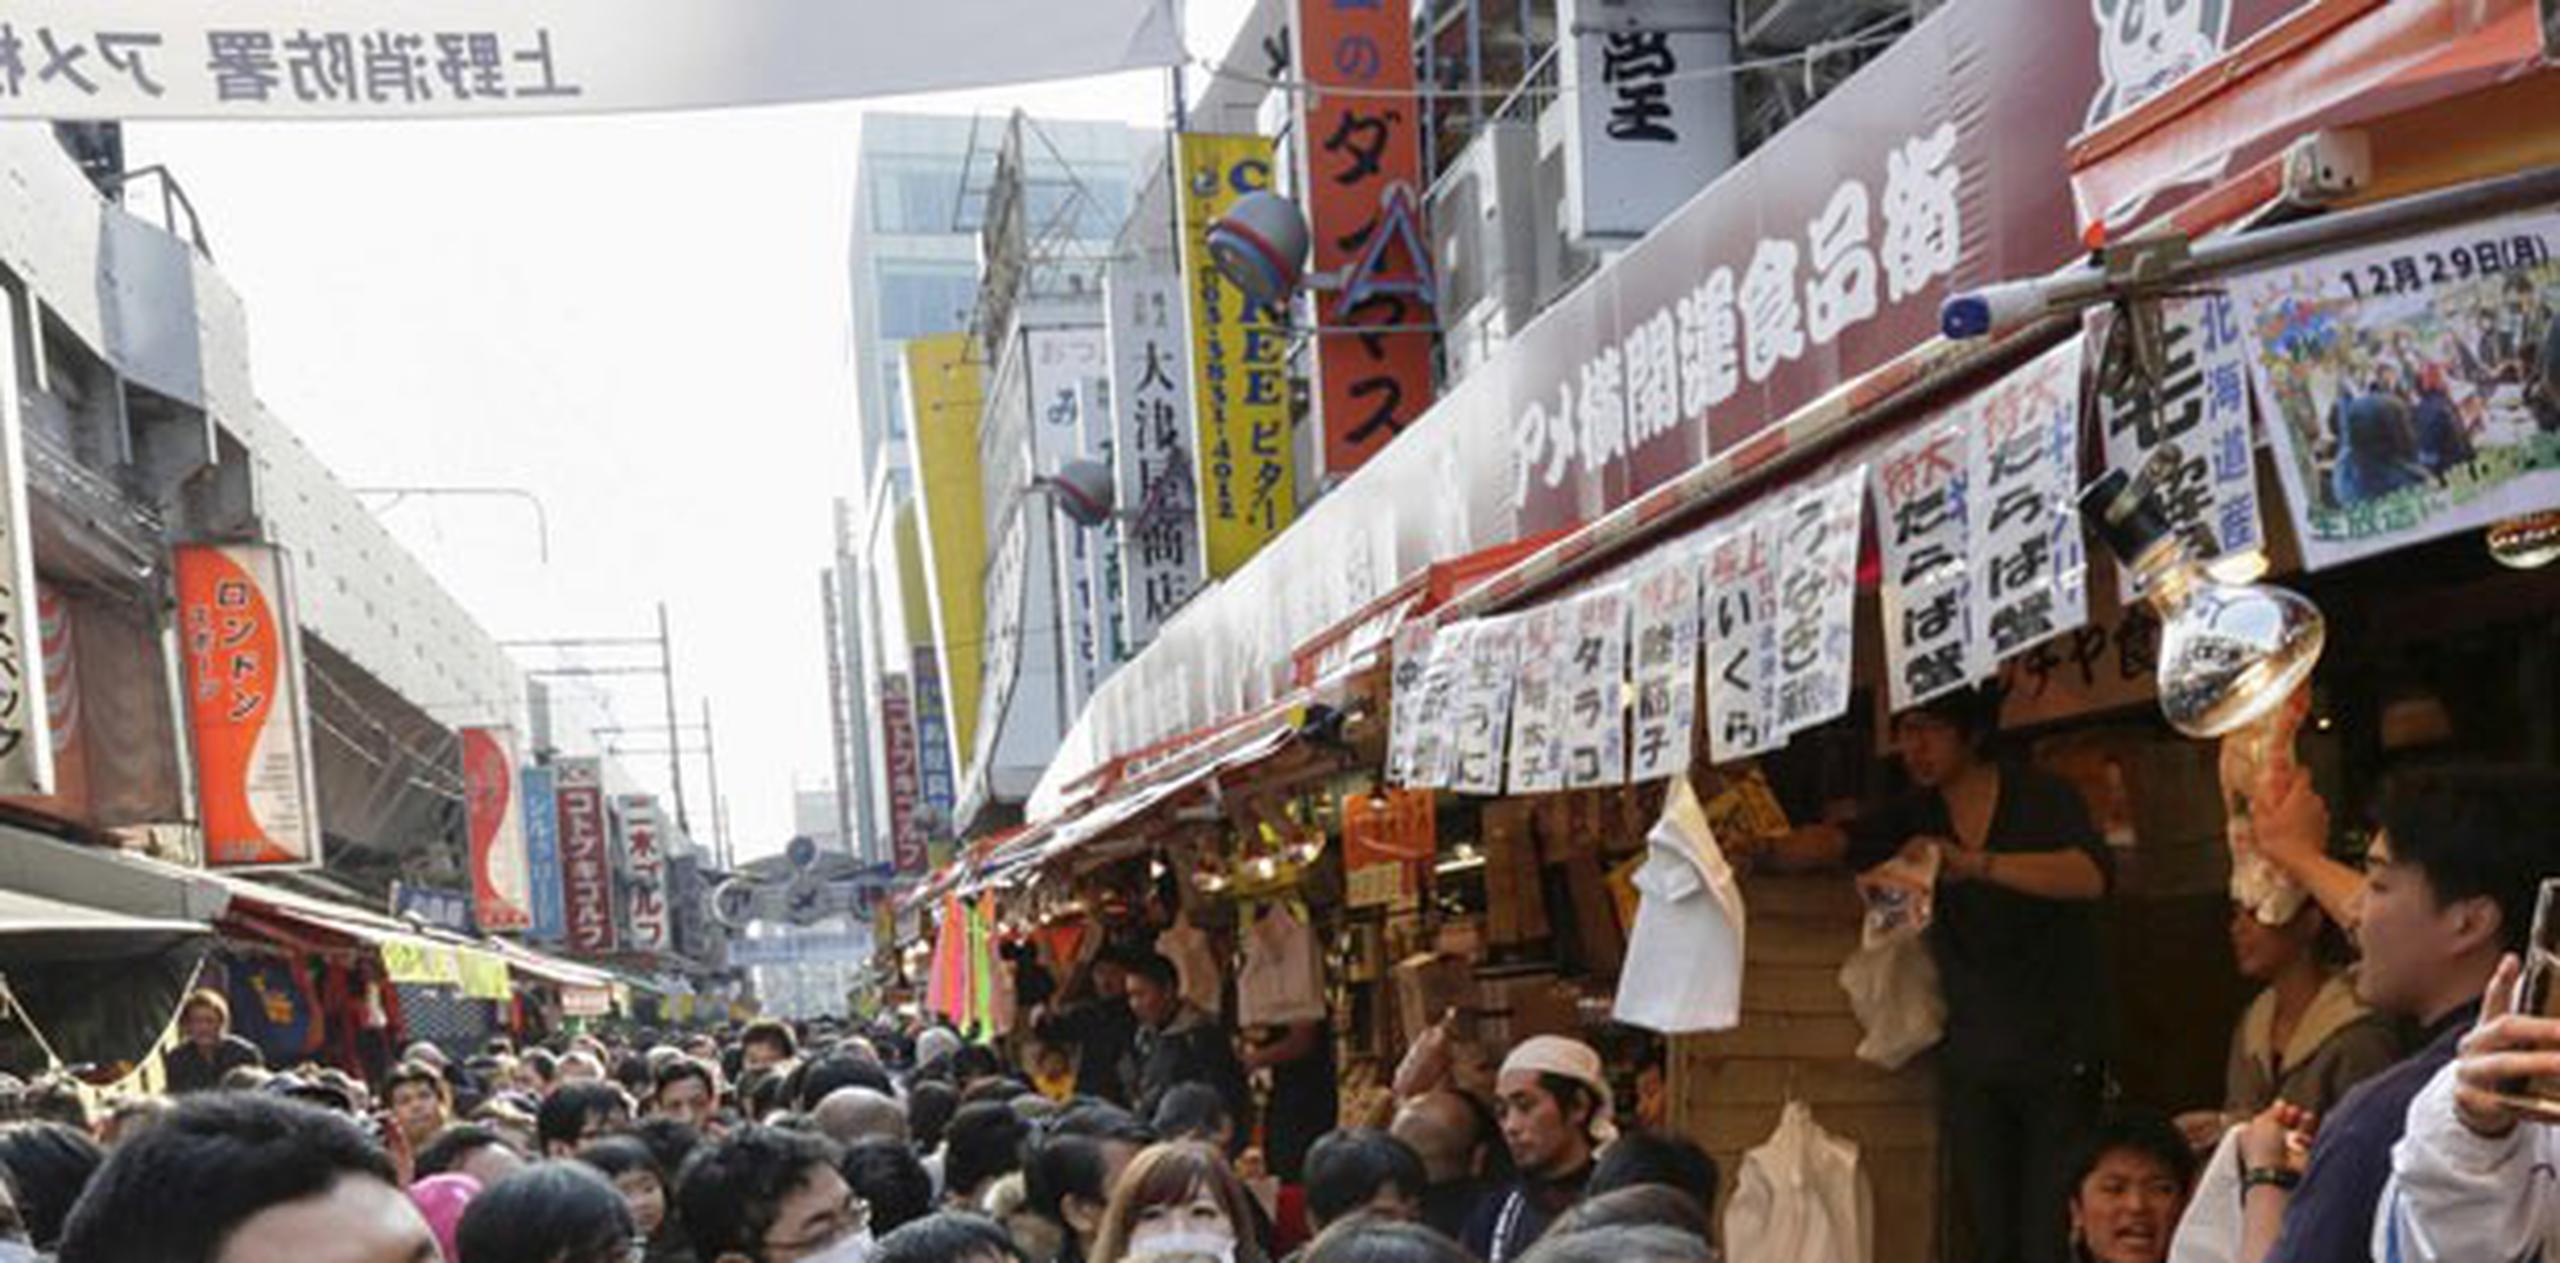 Tal es el "complejo" que acecha a los japoneses por no hablar un inglés correcto, que en algunos establecimientos de comida está prohibida la entrada de extranjeros para evitar problemas ocasionados por el idioma. (Archivo)